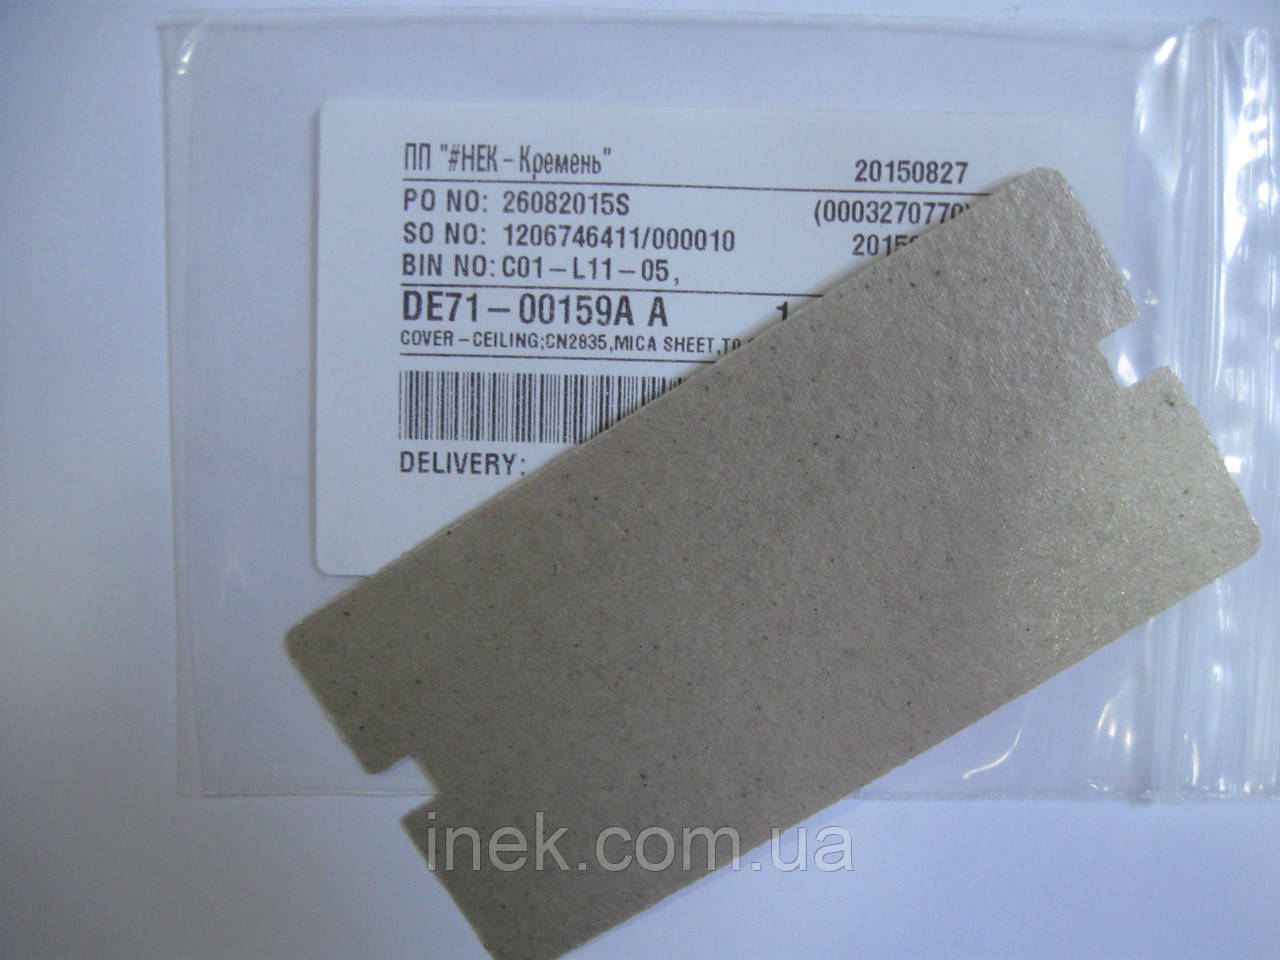 Захисна накладка для мікрохвильової печі Samsung DE71-00159A